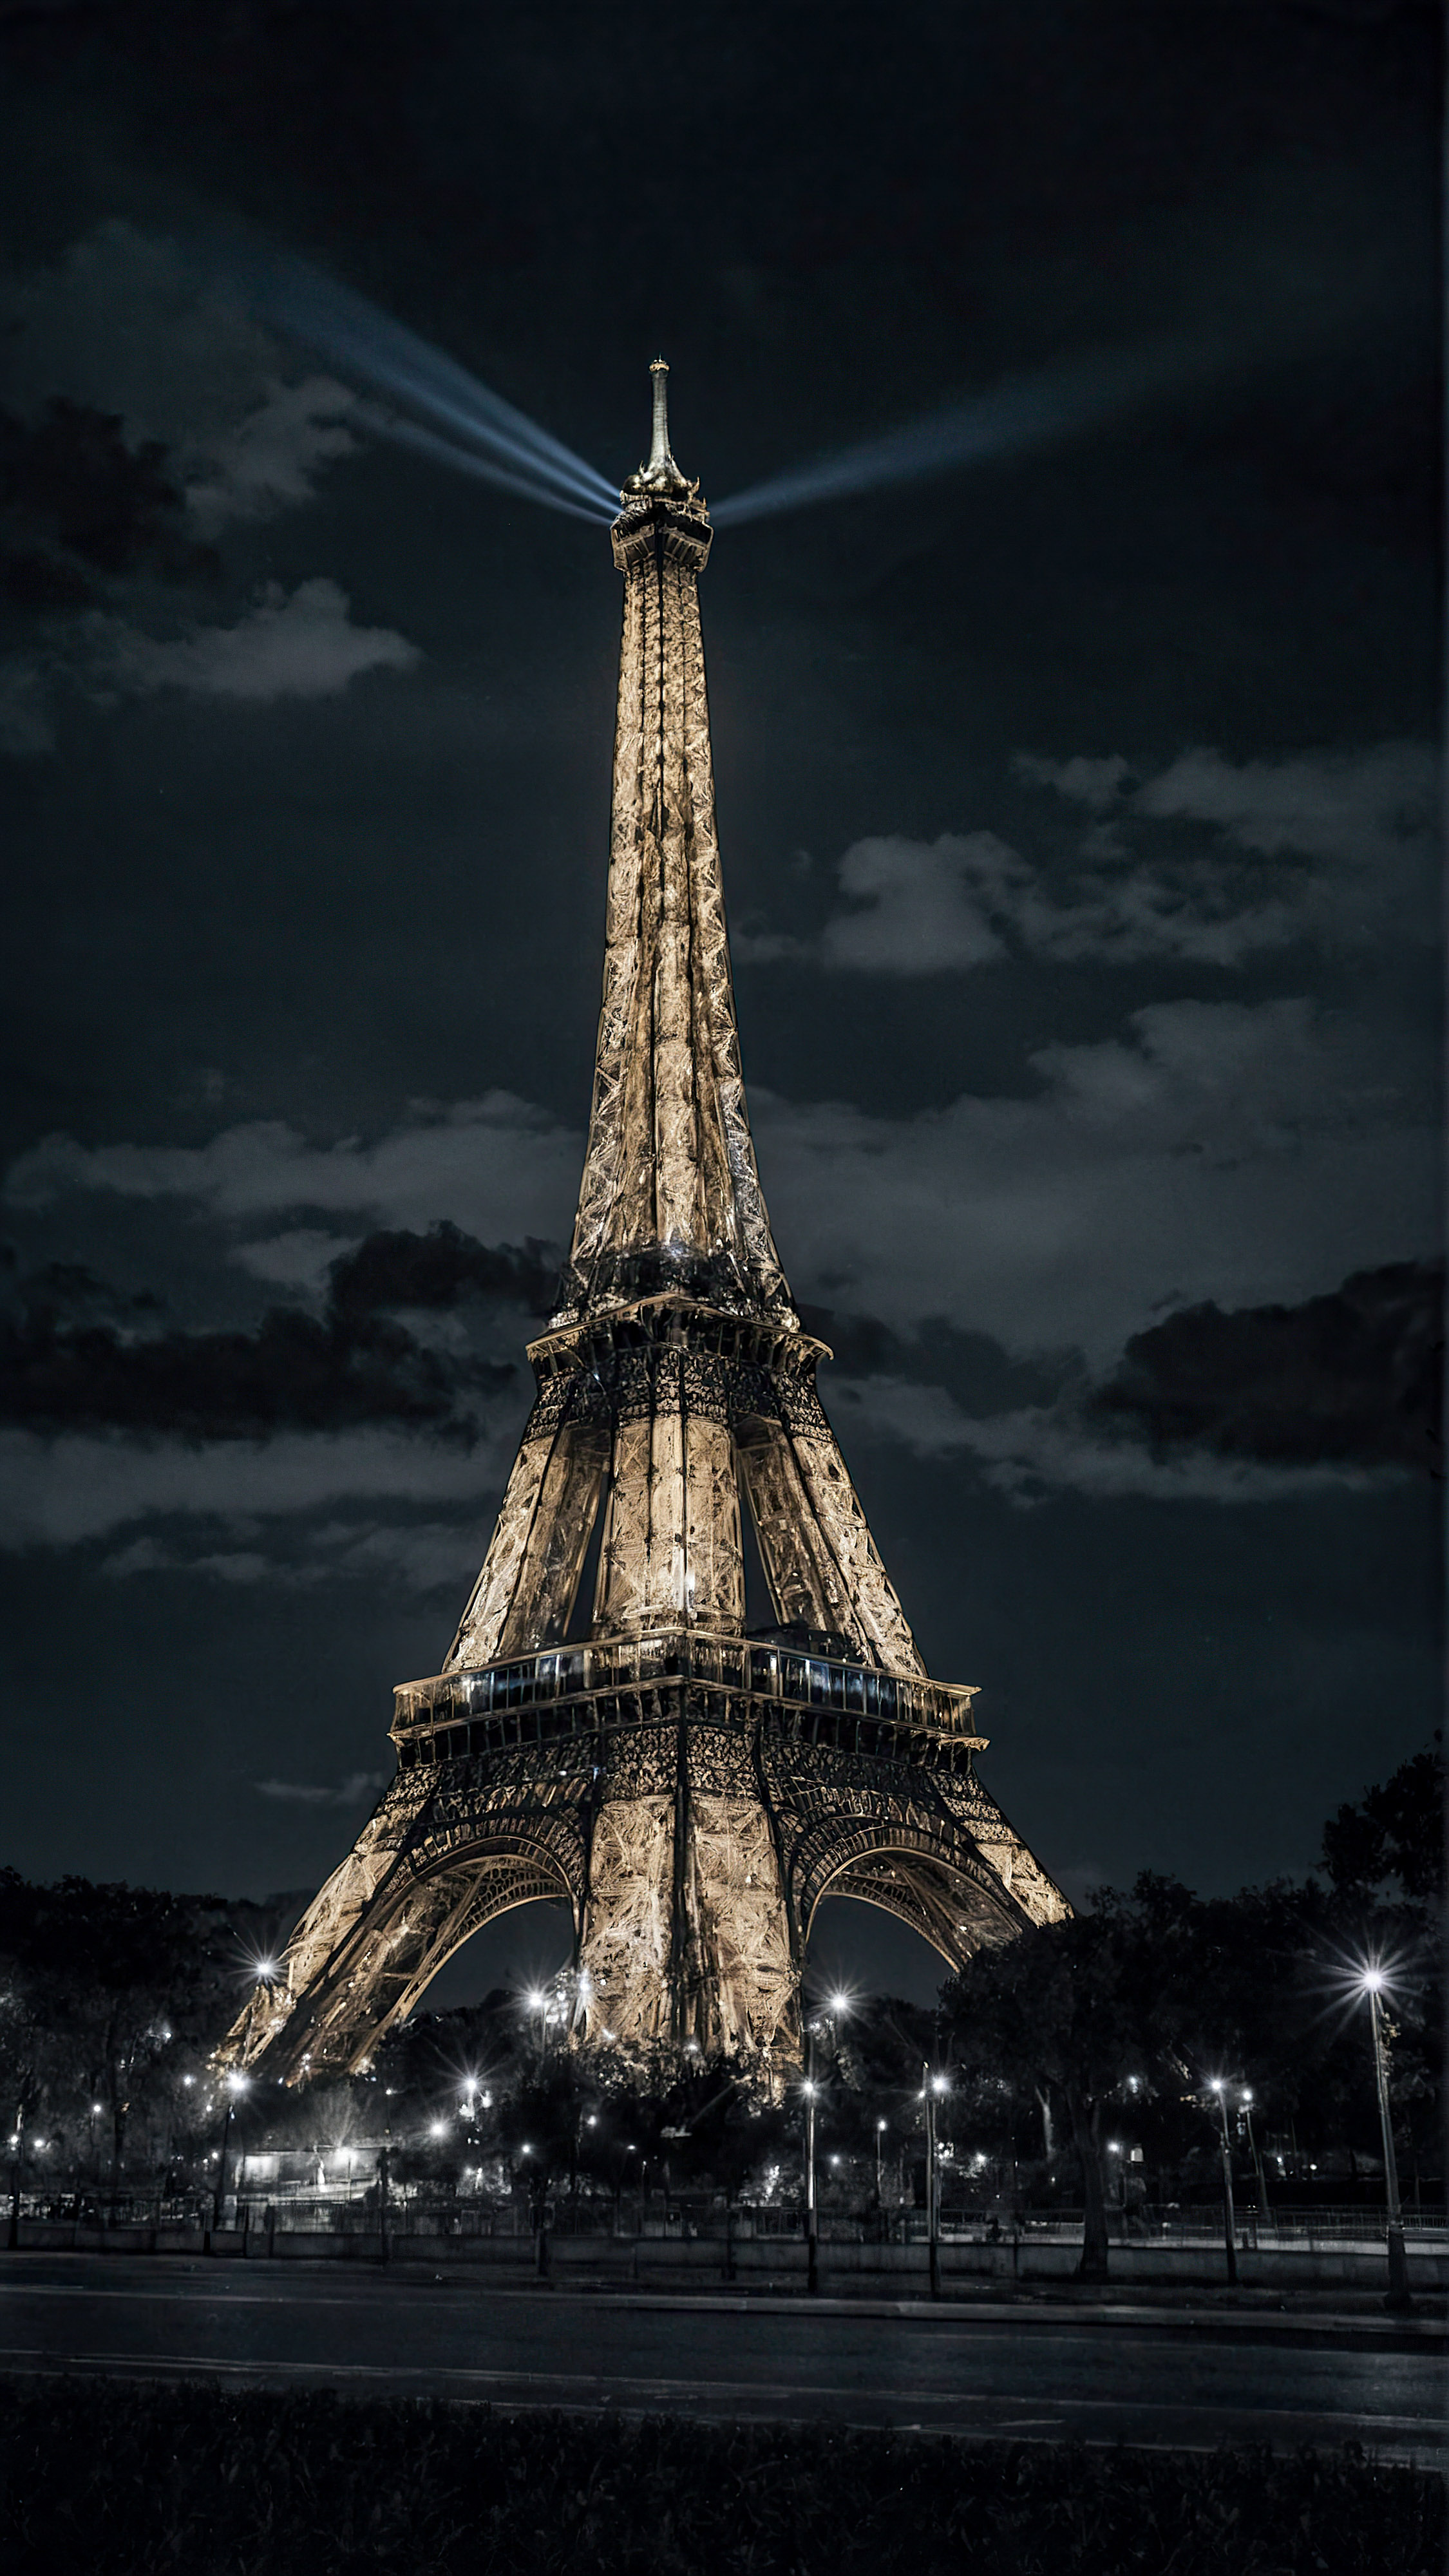 Vivez le charme de Paris avec notre fond d'écran iPhone noir en 4K, présentant la Tour Eiffel illuminée la nuit, se dressant majestueusement contre un ciel sombre. 